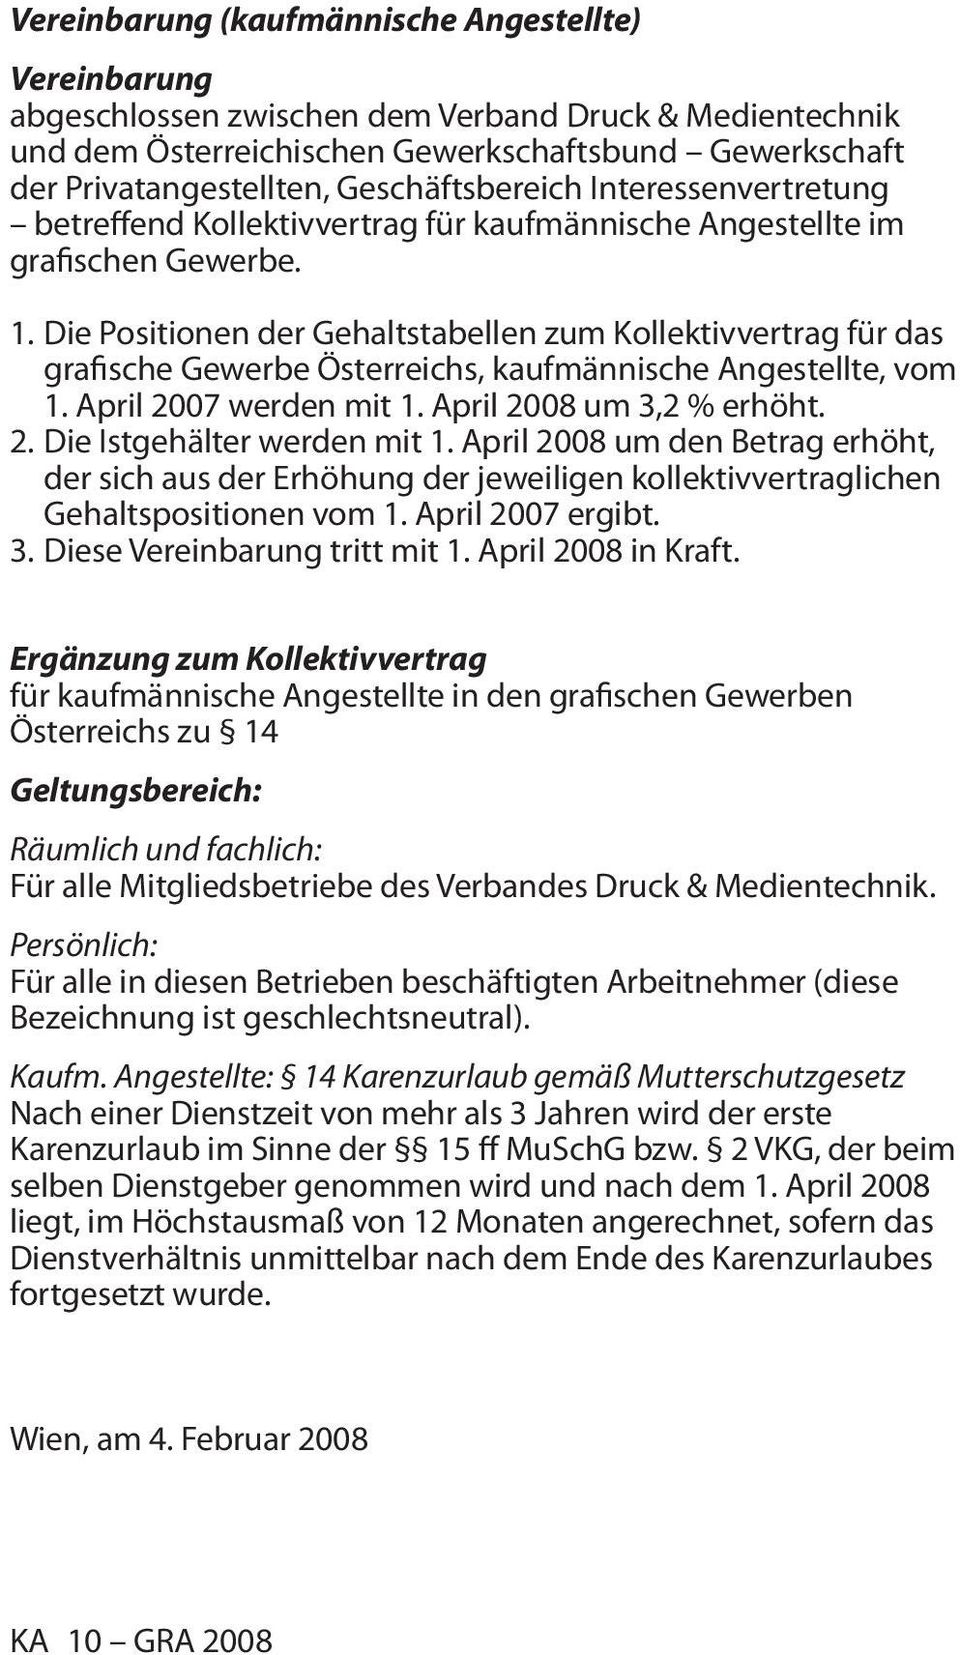 Die Positionen der Gehaltstabellen zum Kollektivvertrag für das grafische Gewerbe Österreichs, kaufmännische Angestellte, vom 1. April 2007 werden mit 1. April 2008 um 3,2 % erhöht. 2. Die Istgehälter werden mit 1.